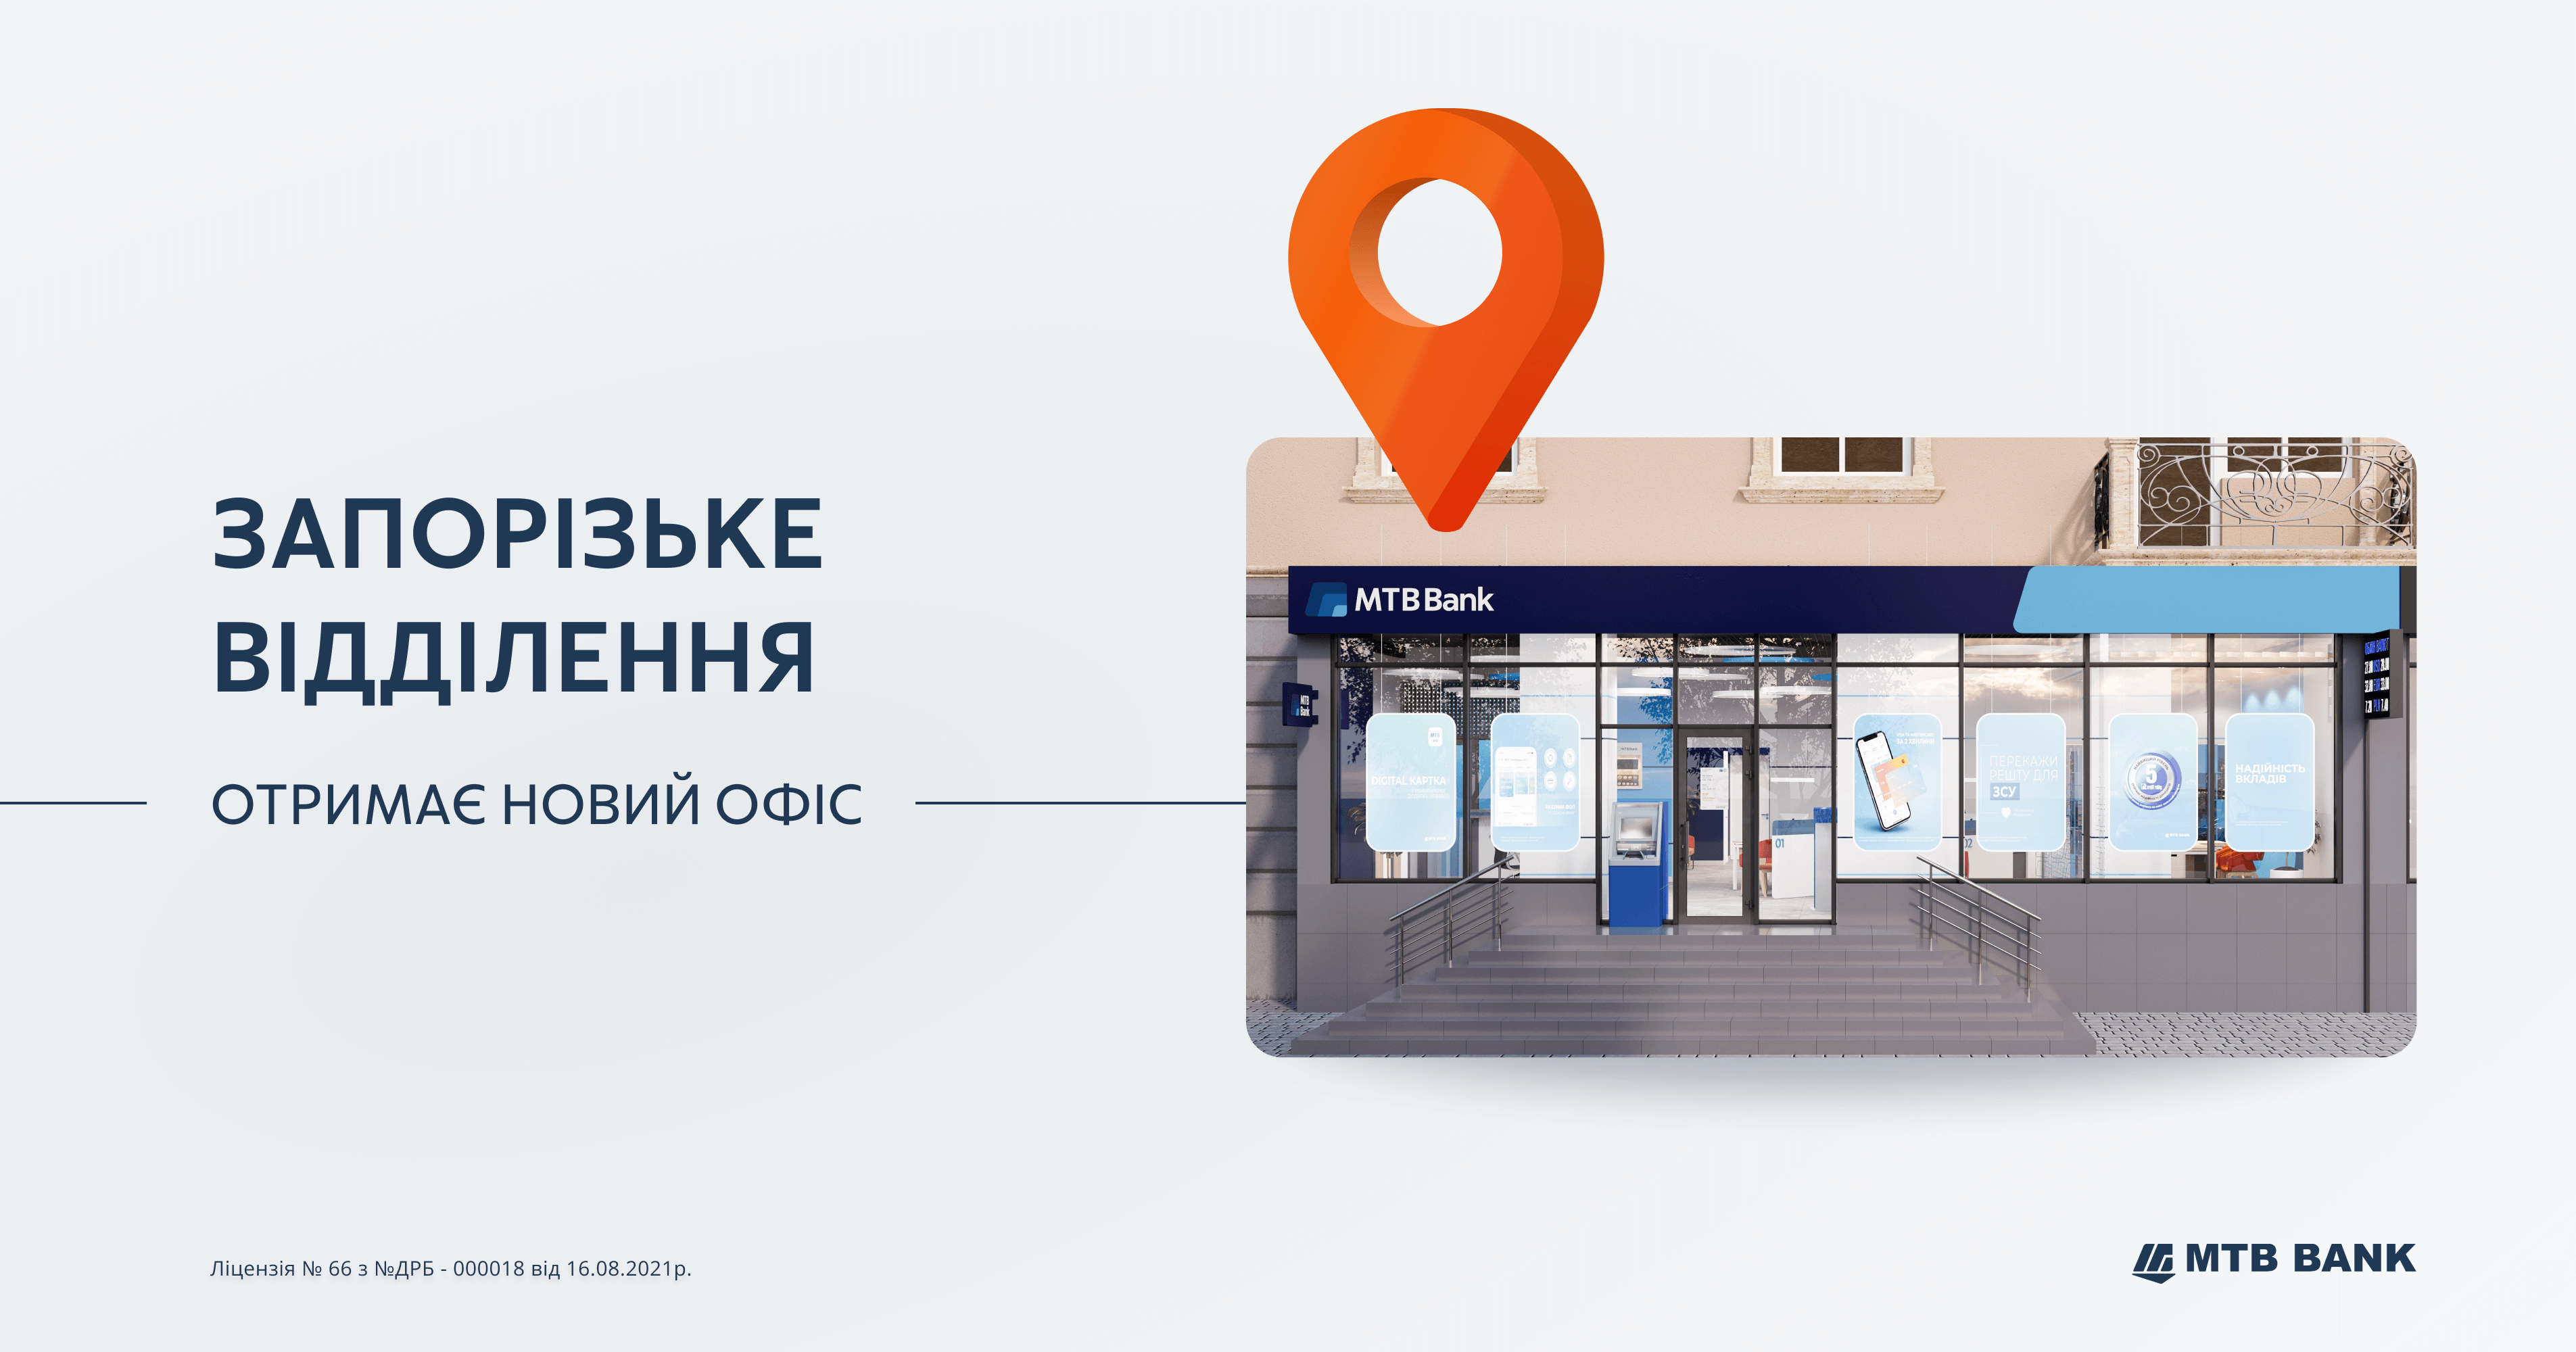 Життя перемагає -  МТБ Банк поступово досягає своїх цілей та підвищує комфорт для своїх клієнтів - фото - mtb.ua